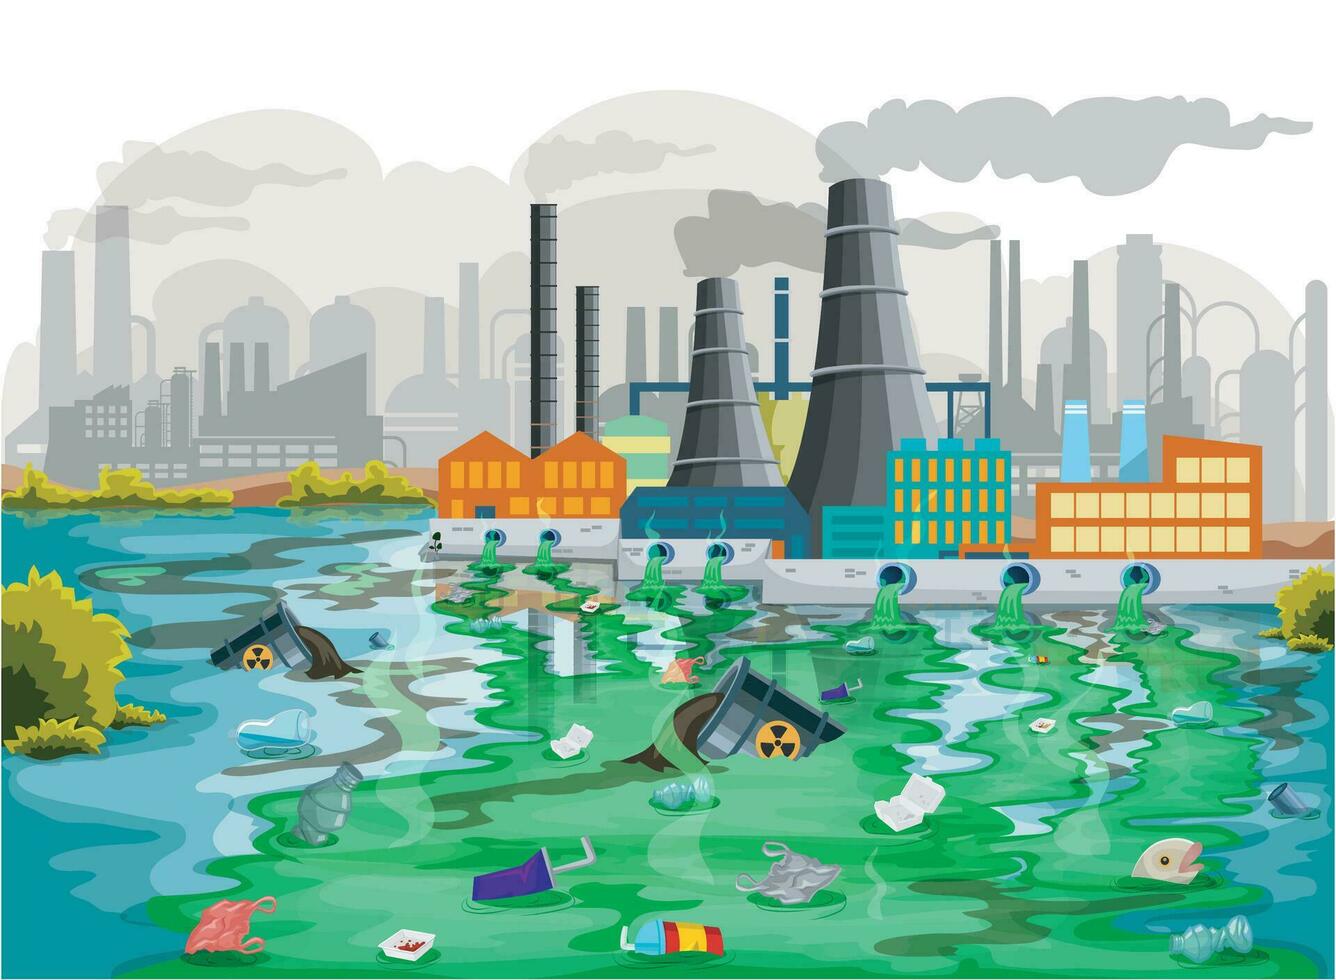 vatten och luft förorening från industriell avfall resultat i miljö- skada och skadar offentlig hälsa vektor